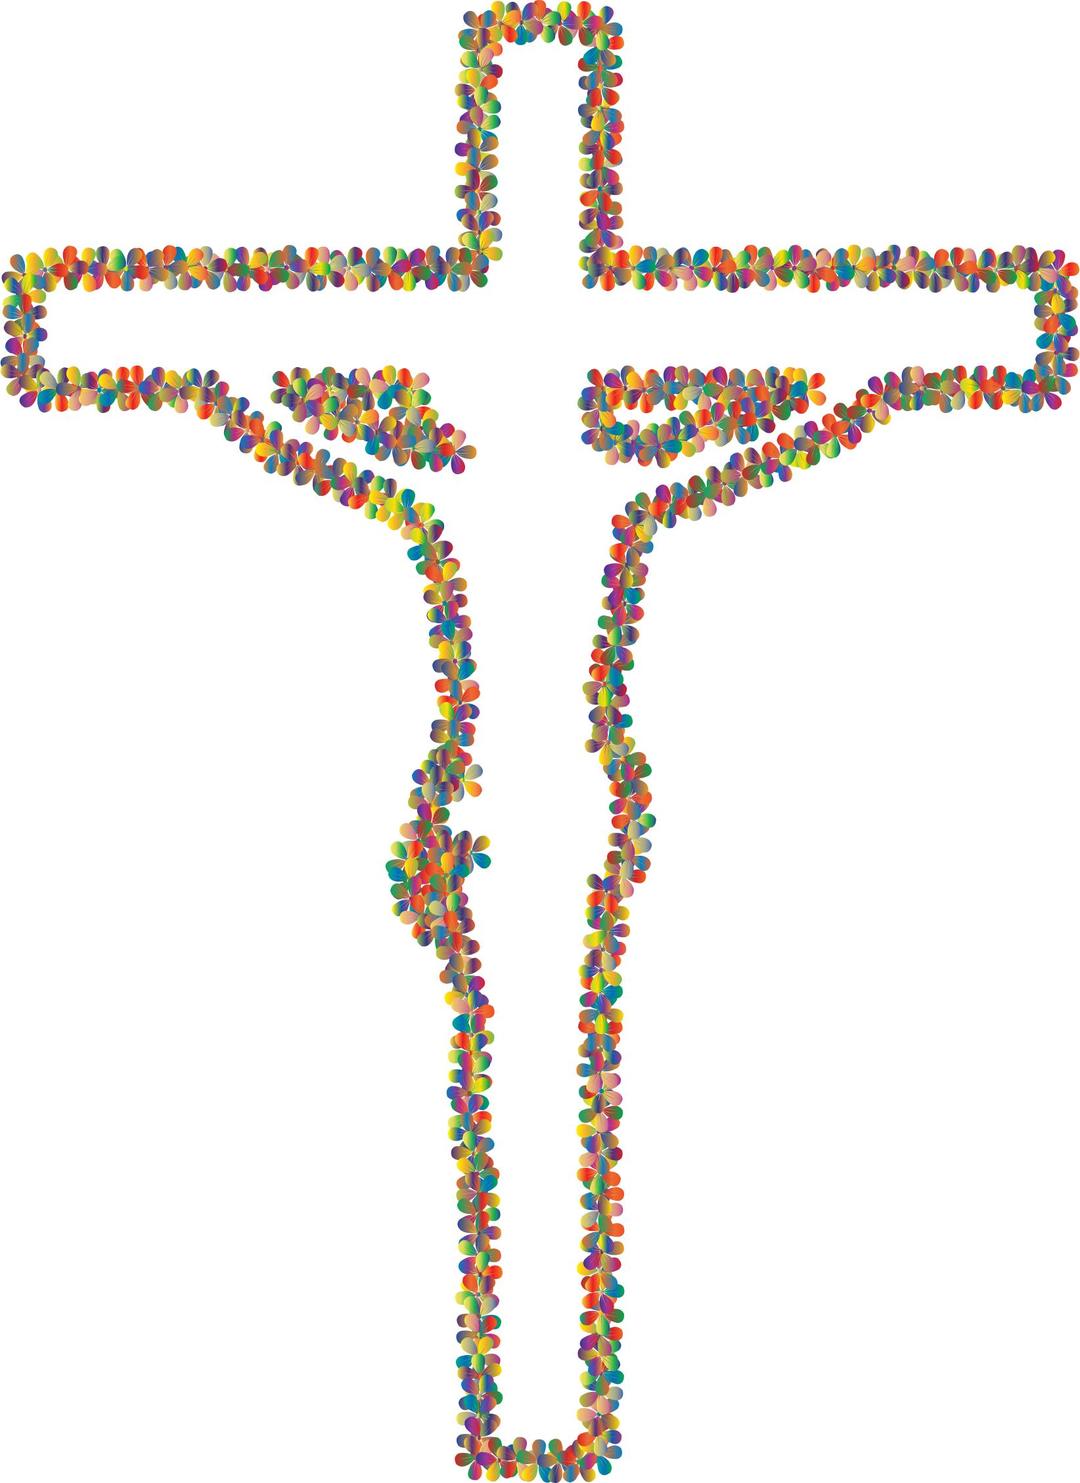 Prismatic Floral Crucifix Outline 3 png transparent